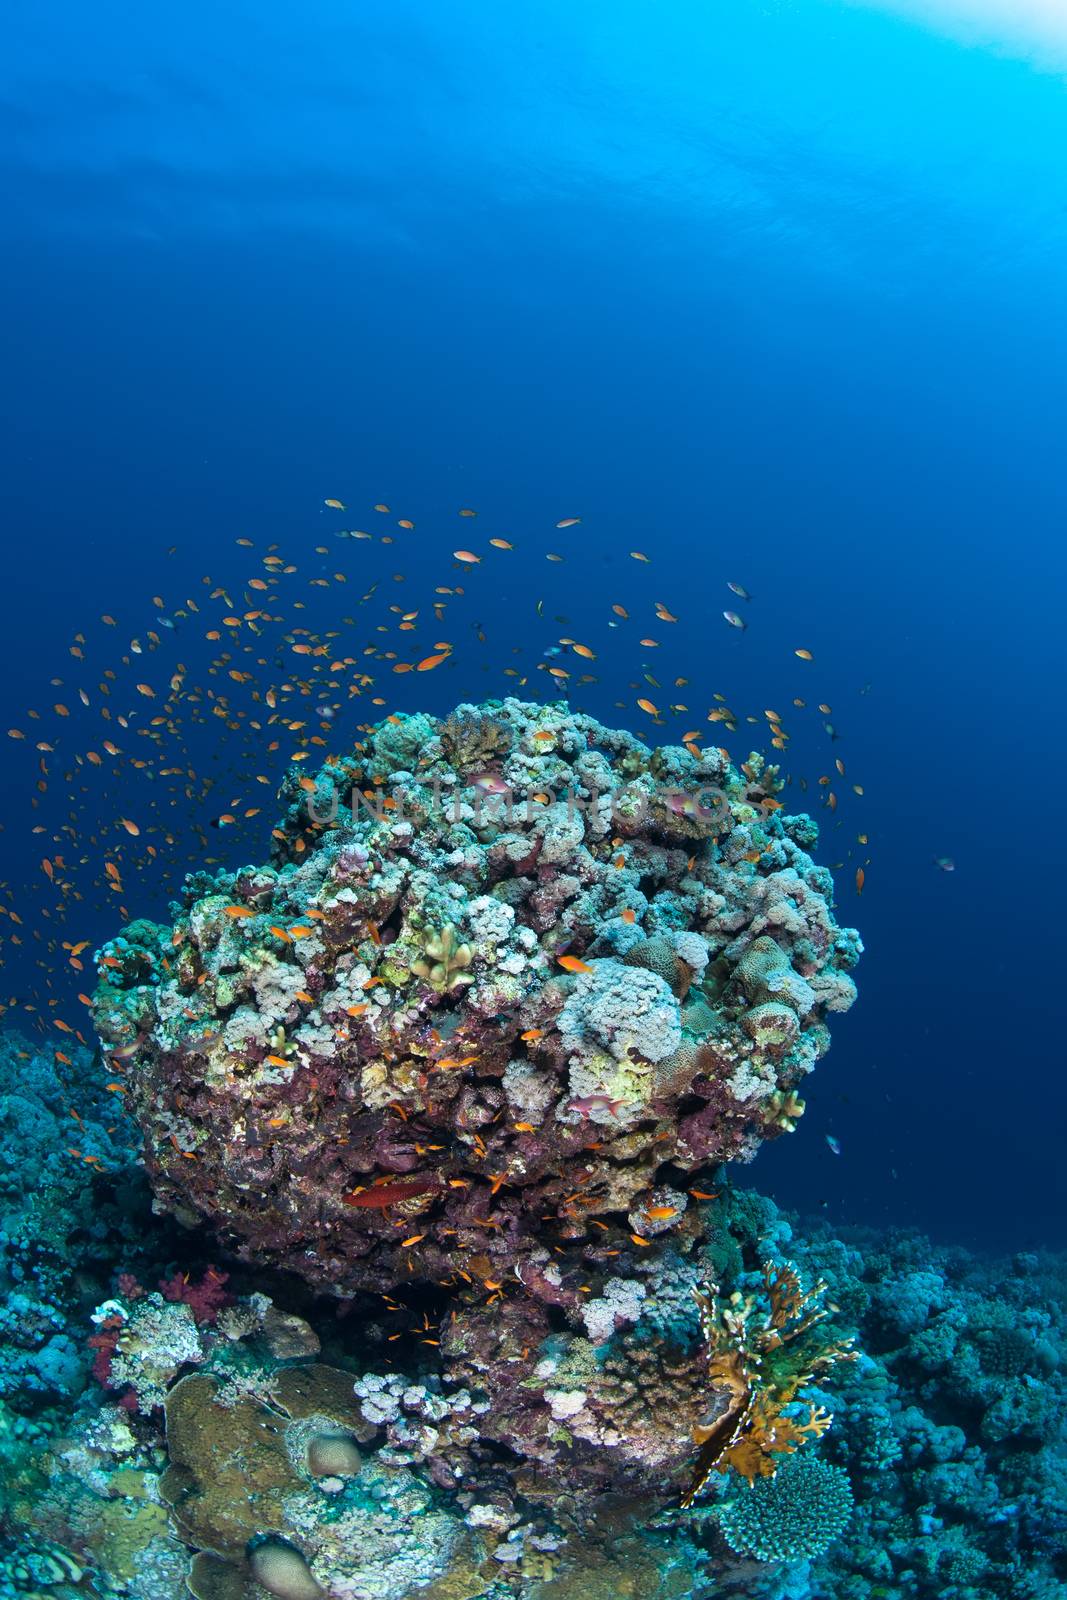 coral life diving Sudan Soudan Red Sea safari by desant7474